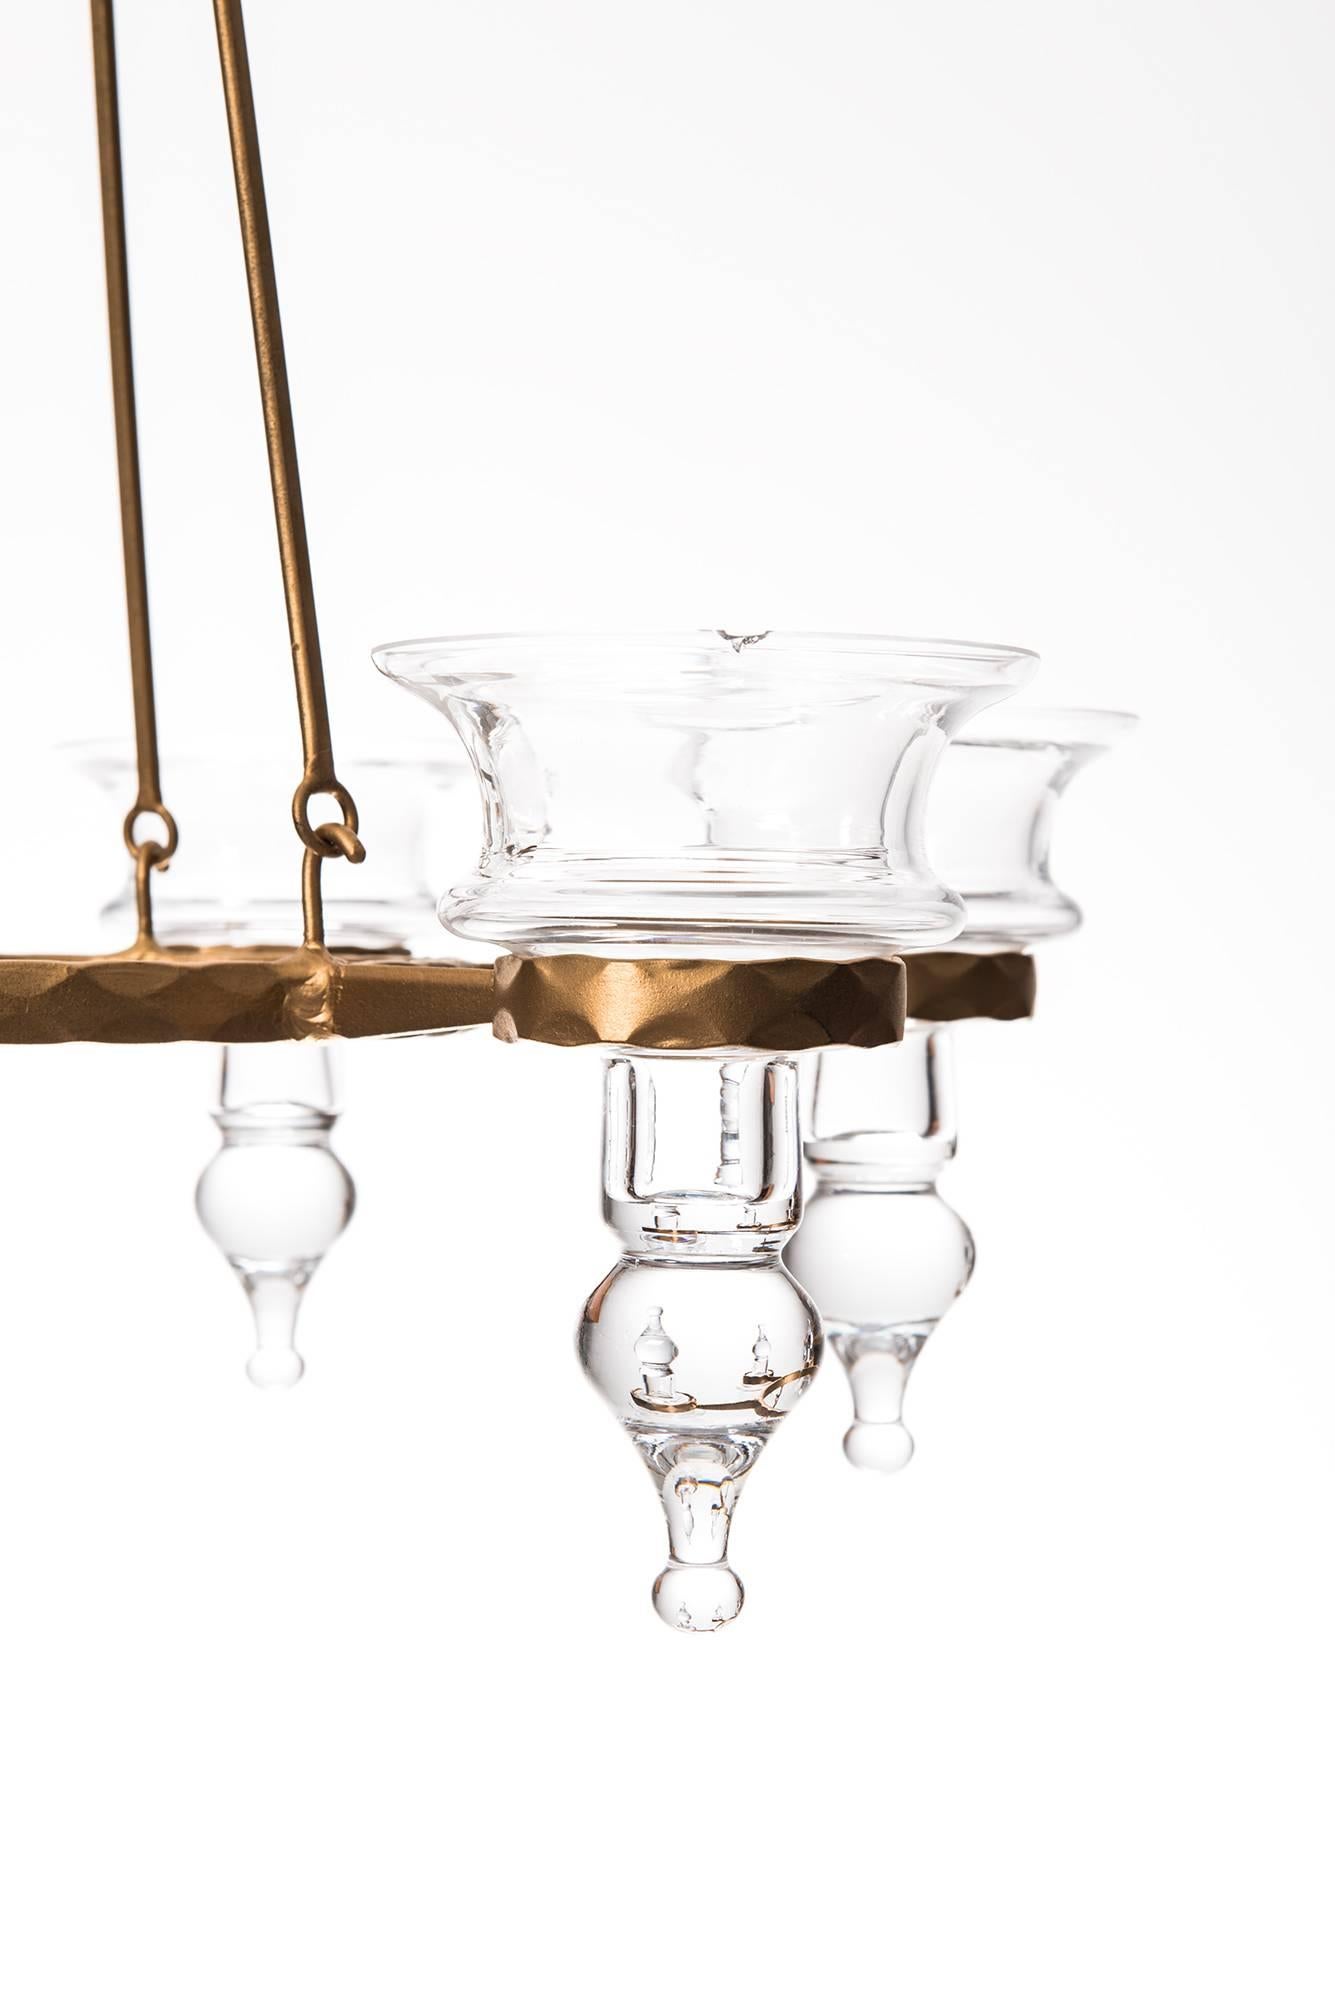 Chandelier / hanging candelabra designed by Bertil Vallien. Produced by Boda Smide in Sweden.